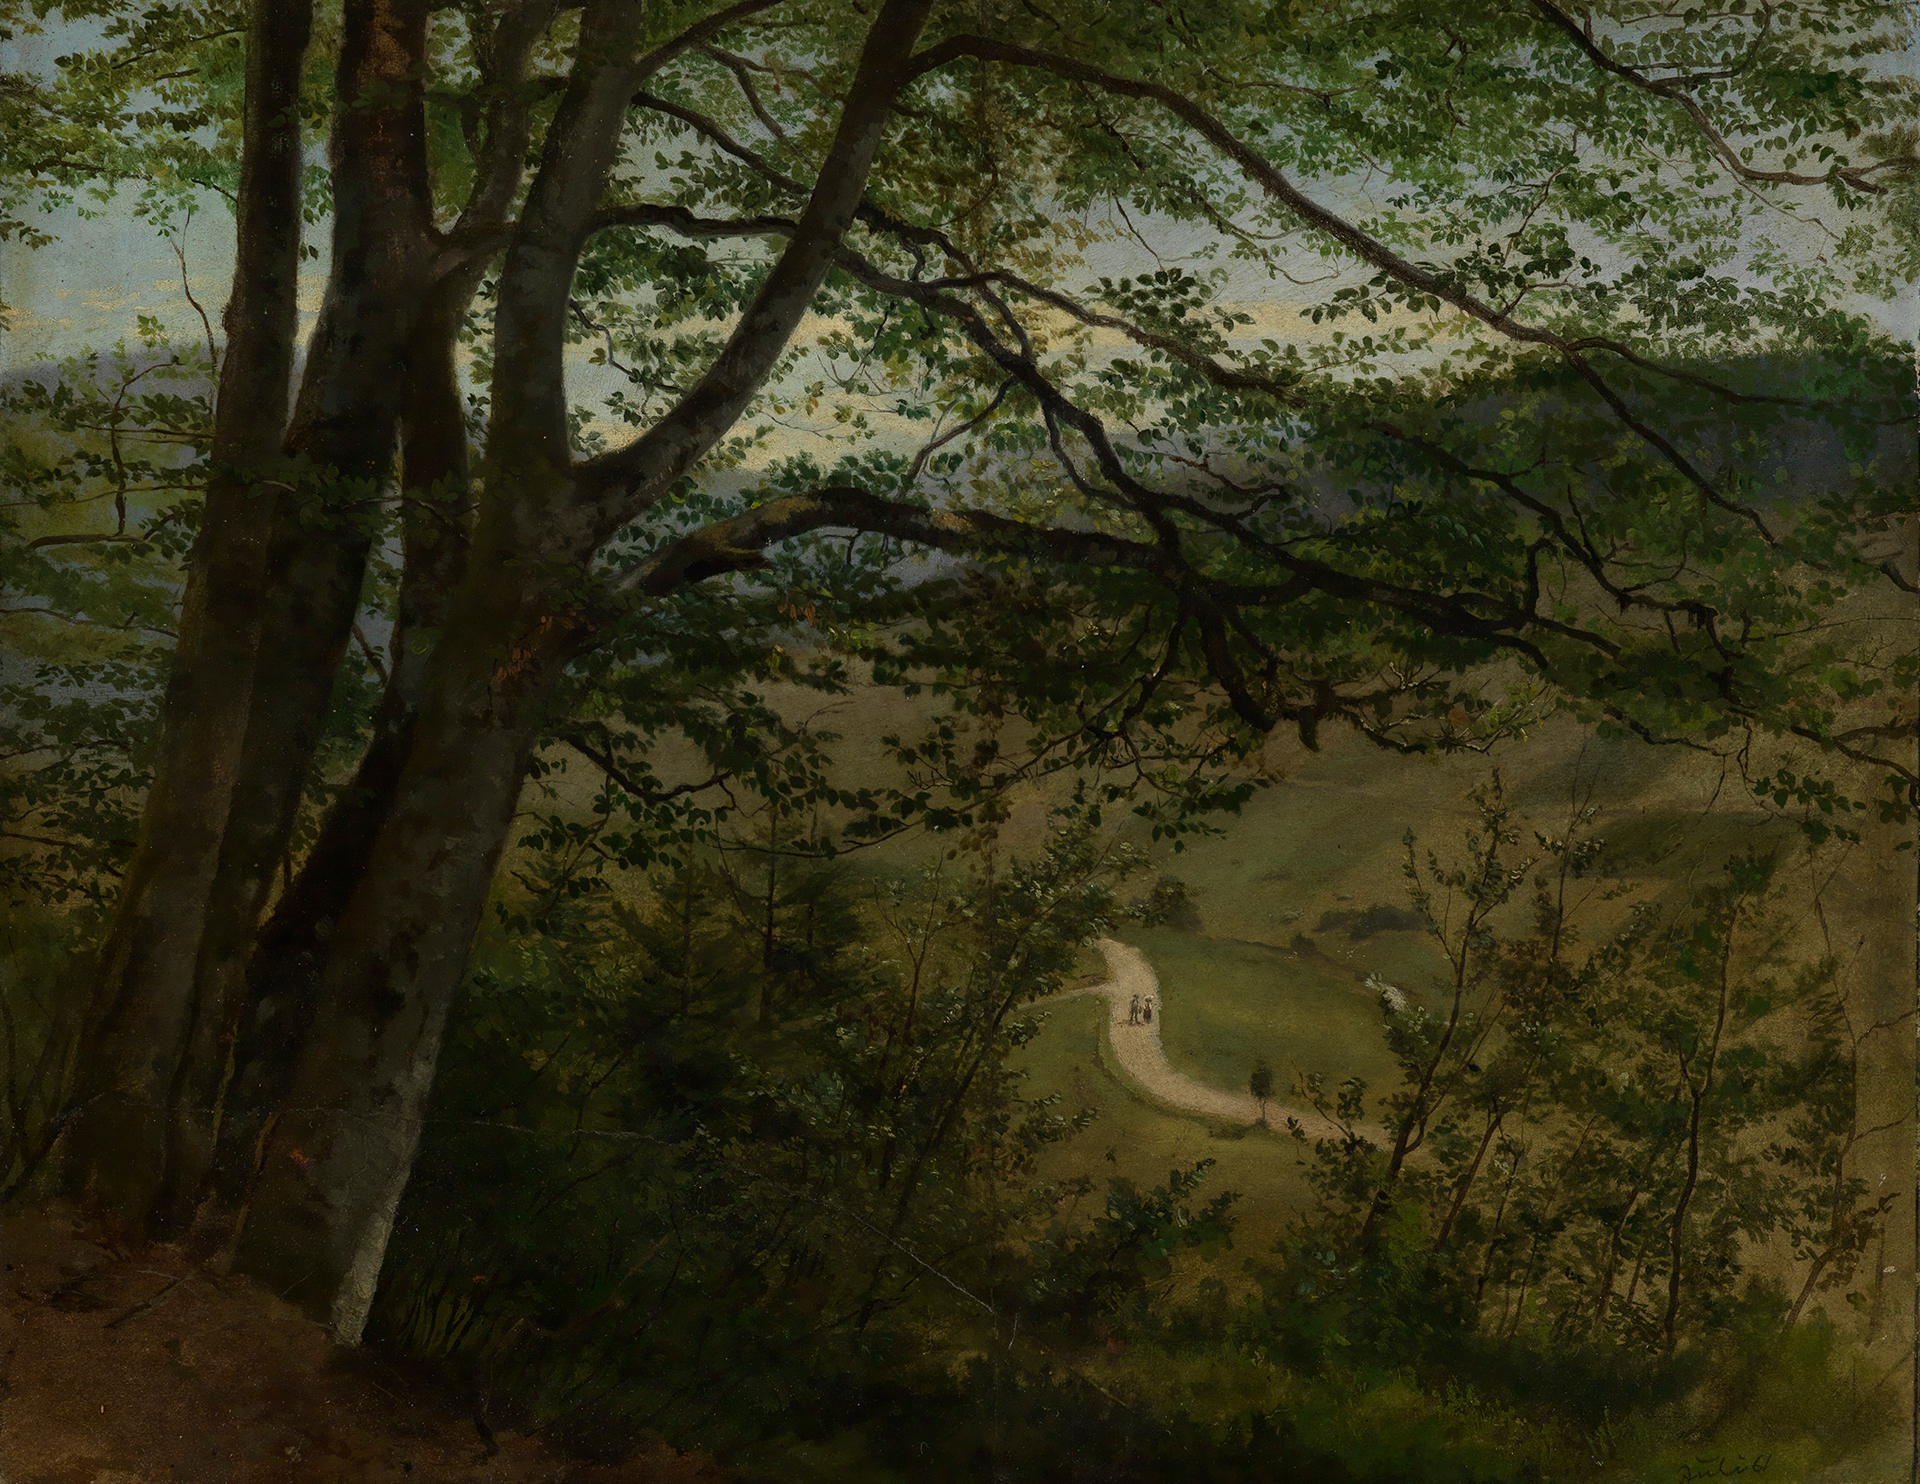 Das Landschaftsgemälde des Schwarzwaldmalers Hans Thoma zeigt den durch Äste gesäumten Blick auf ein Tal mit einem geschlängelten Weg